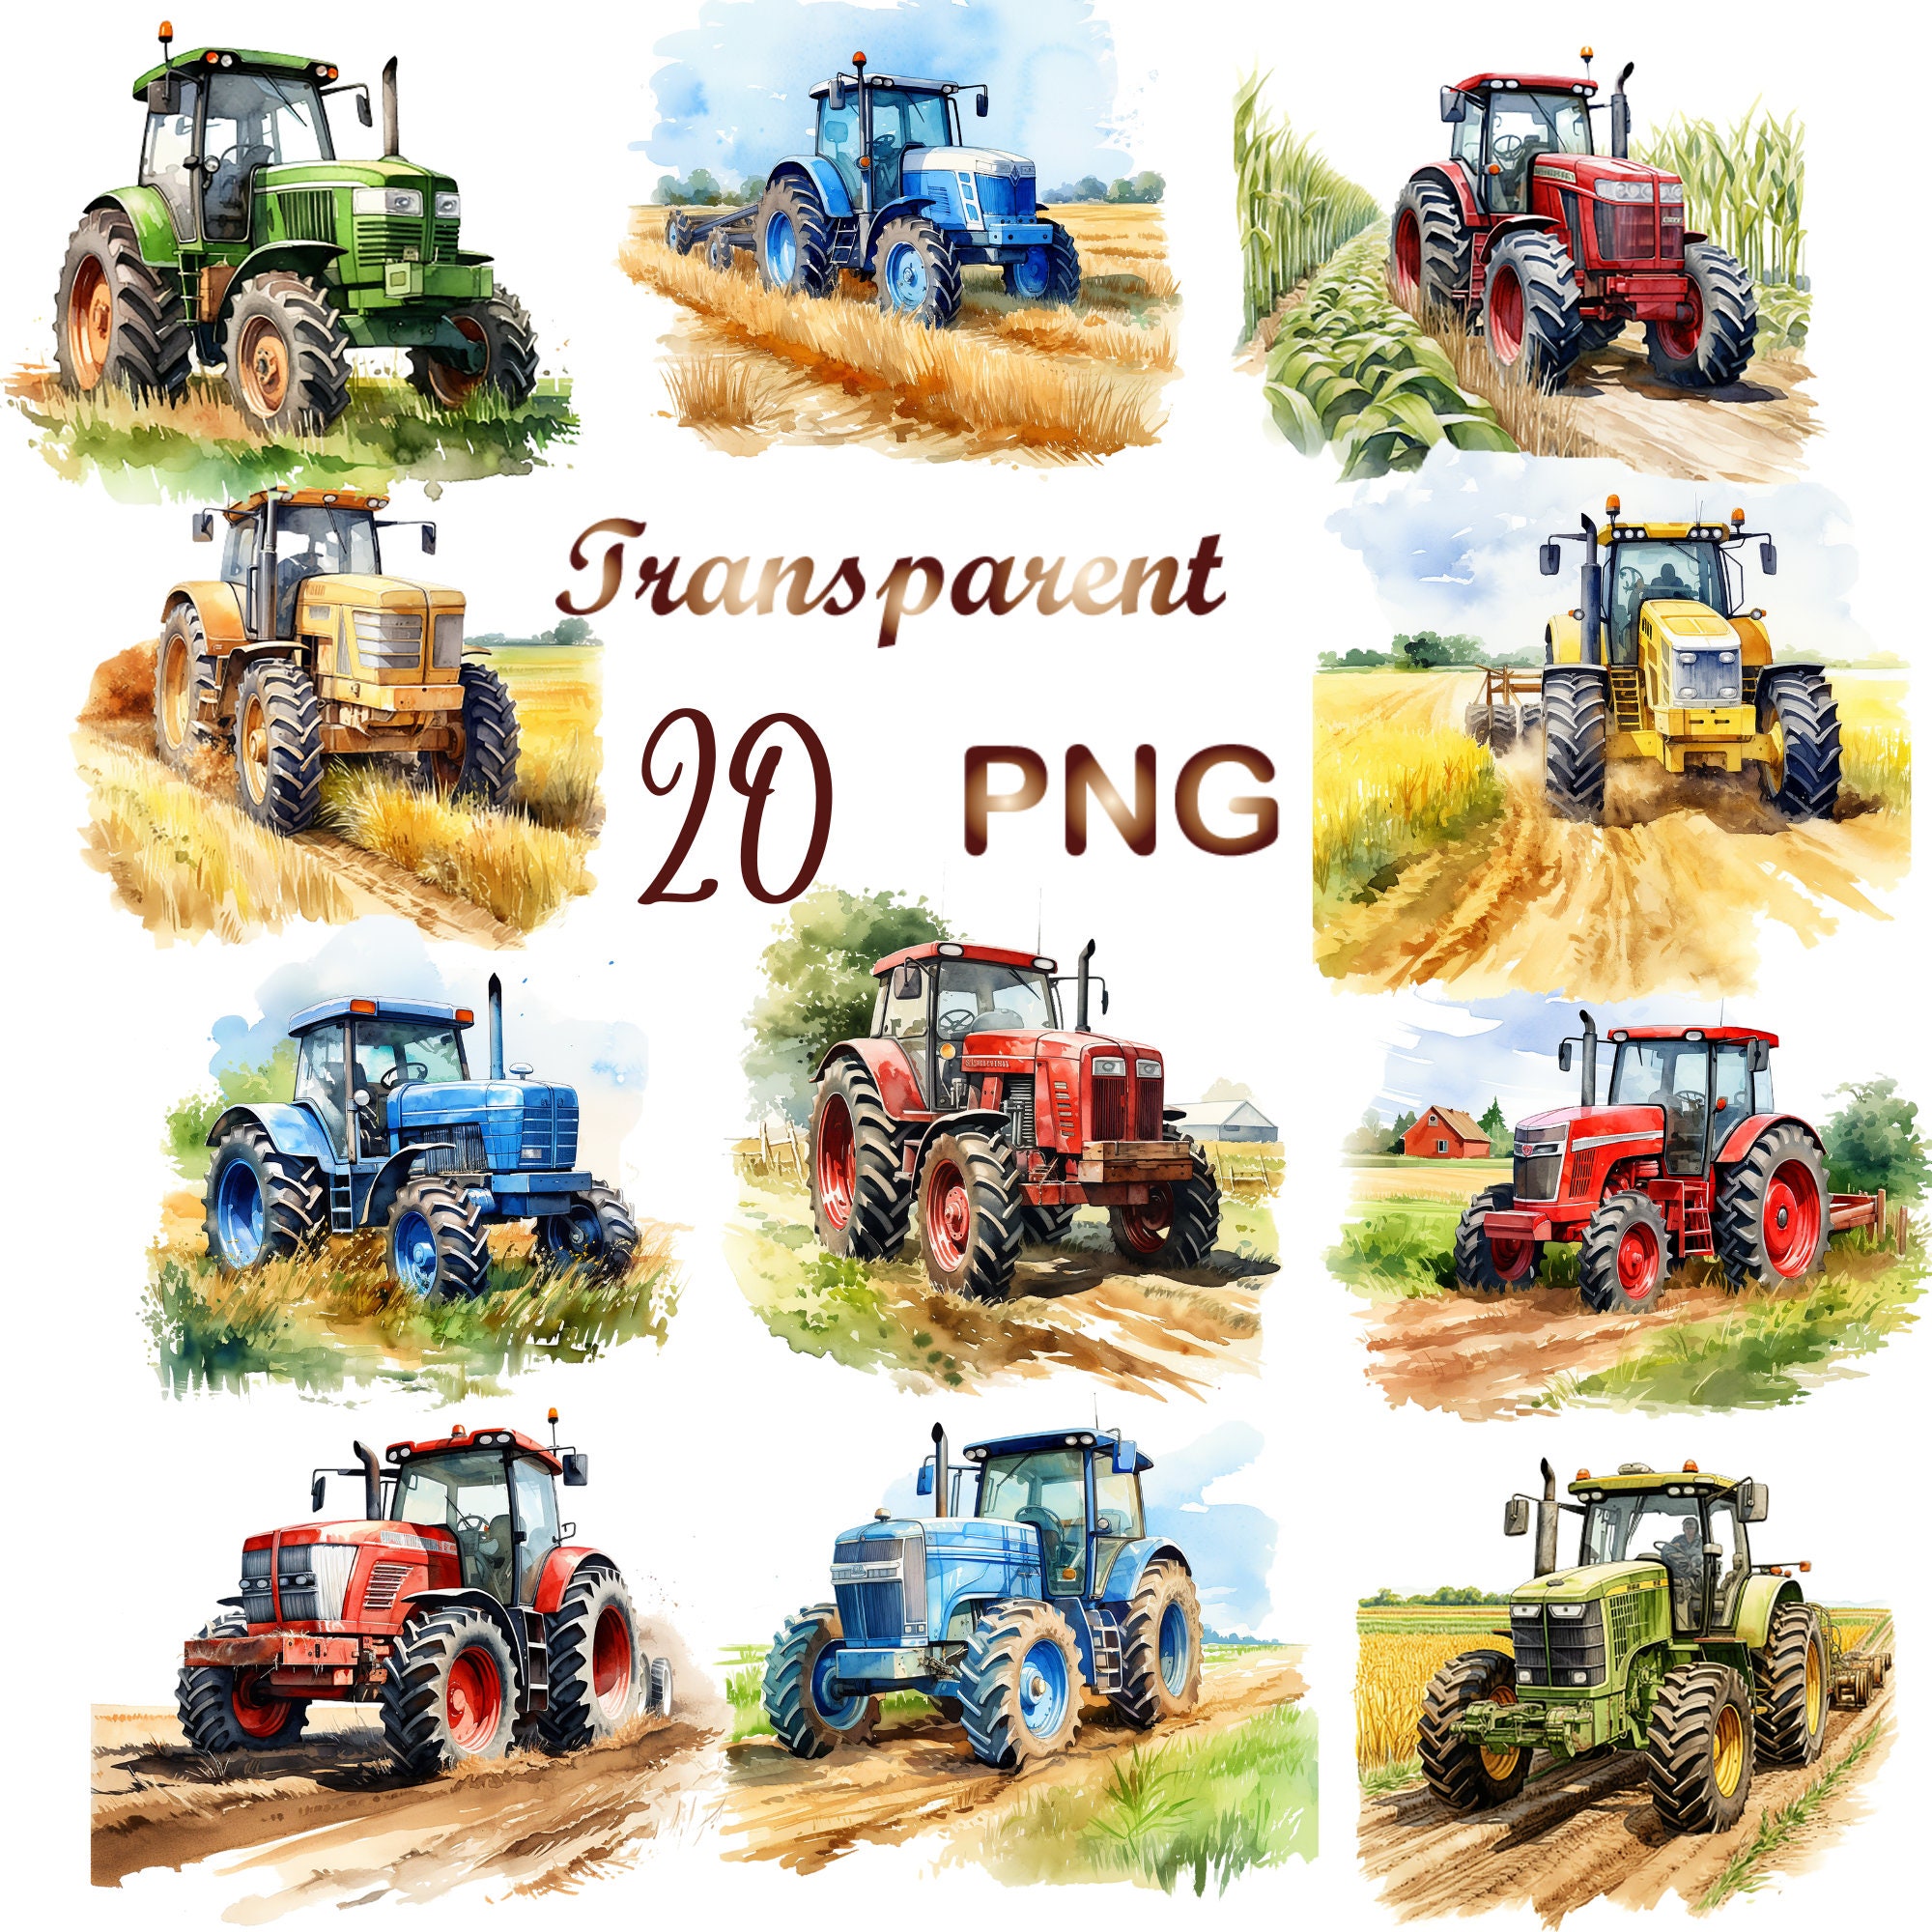 Grüner Traktor mit Anhänger PNG Datei, Traktor mit Anhänger Sublimation,  Aquarell Traktor png, Junge Traktor Sublimation Design, Traktor png -  .de